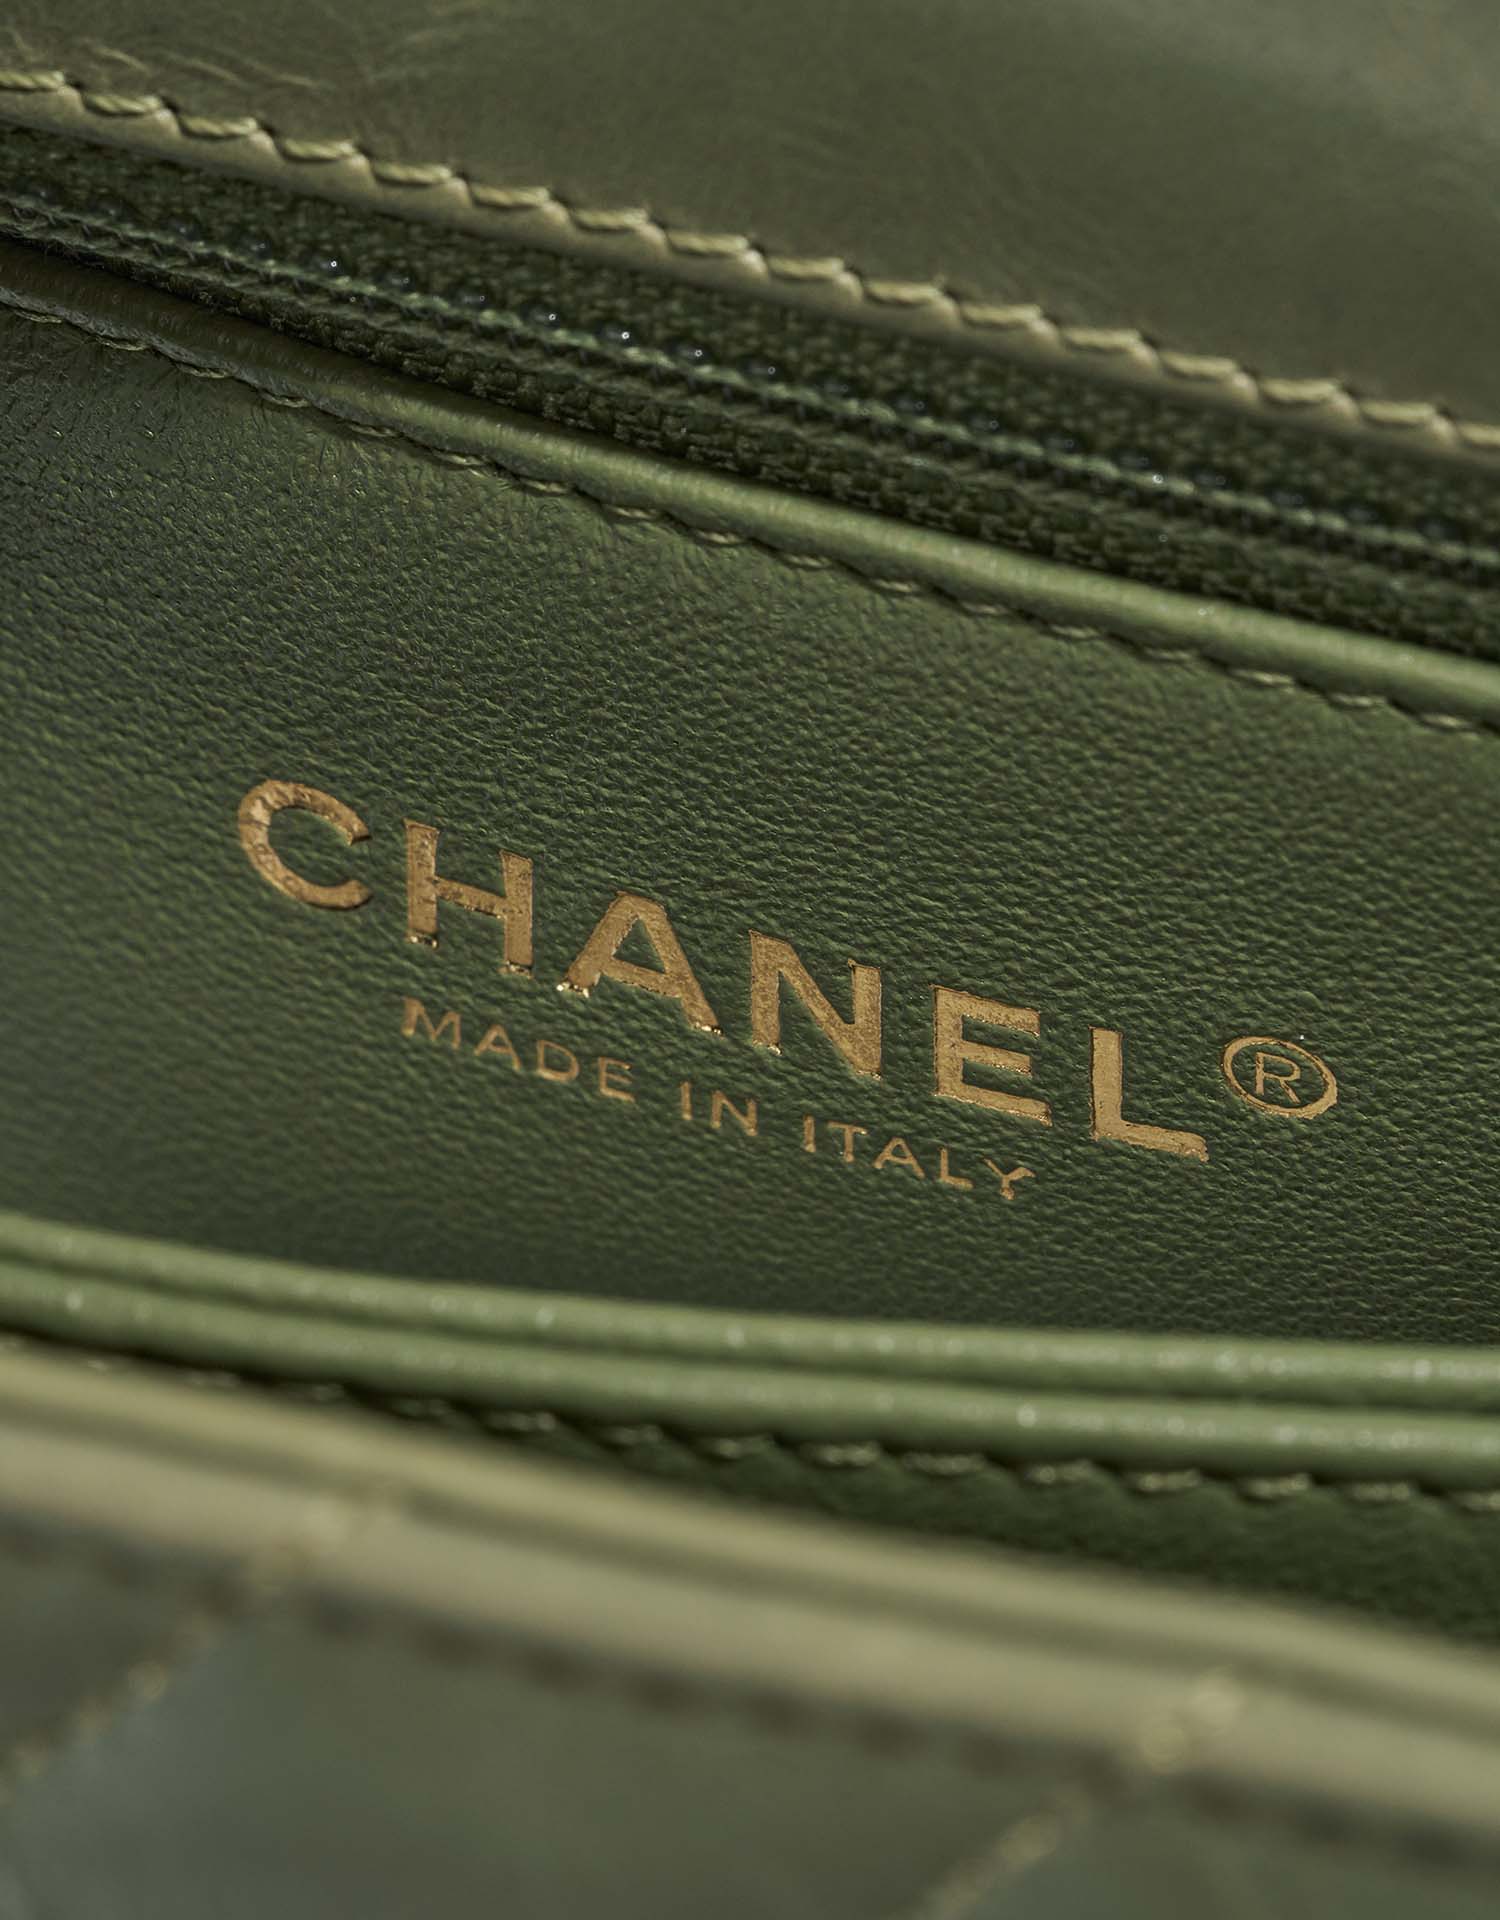 Chanel TimelessHandle Small Green Logo | Verkaufen Sie Ihre Designer-Tasche auf Saclab.com